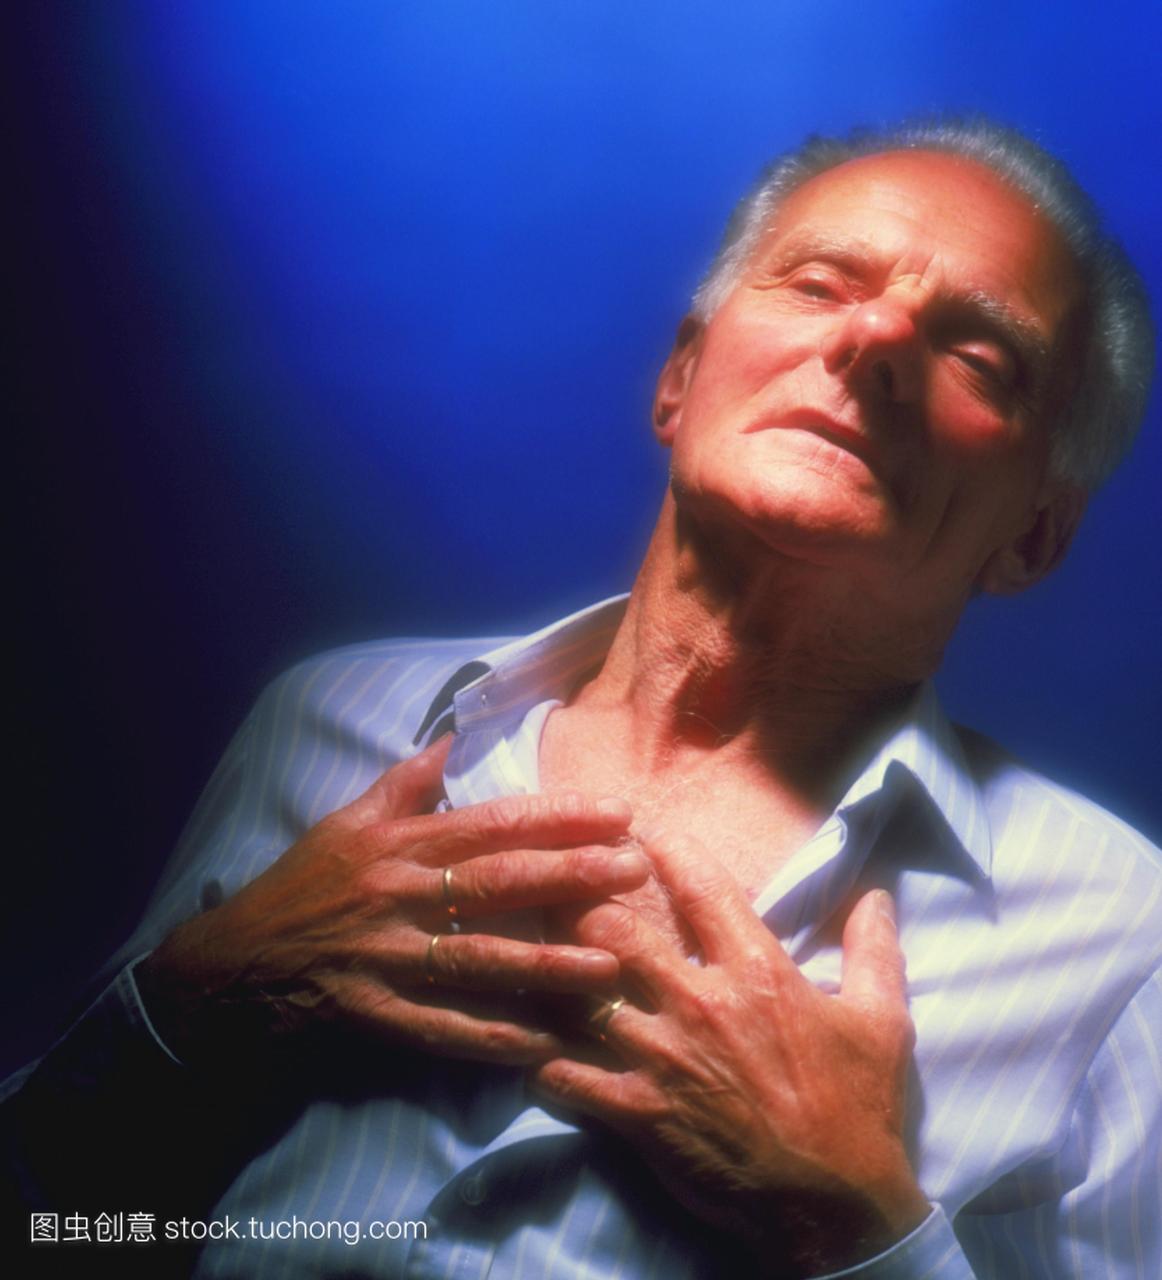 病发作。心绞痛是一种严重的疼痛和收缩胸部。